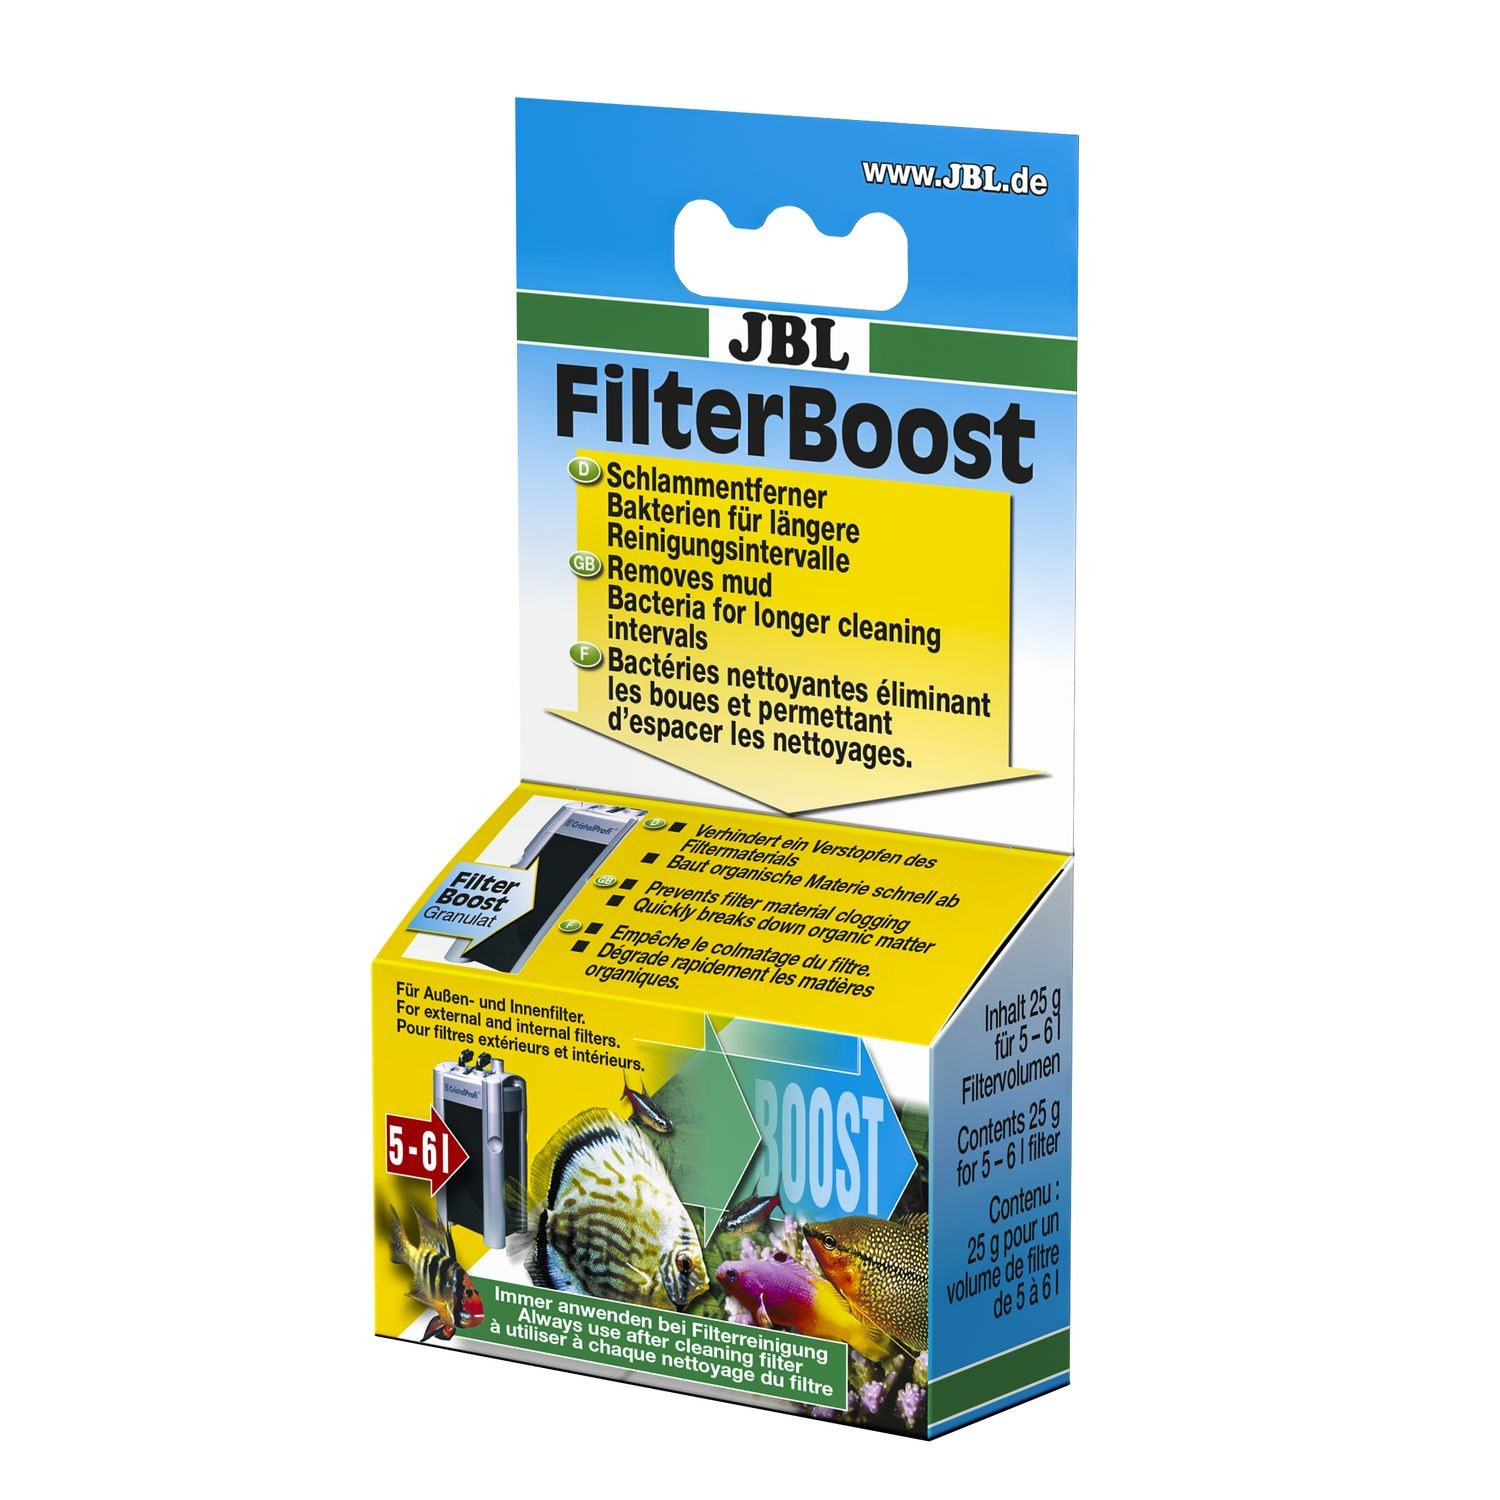 FilterBoost améliore les performances de votre filtre